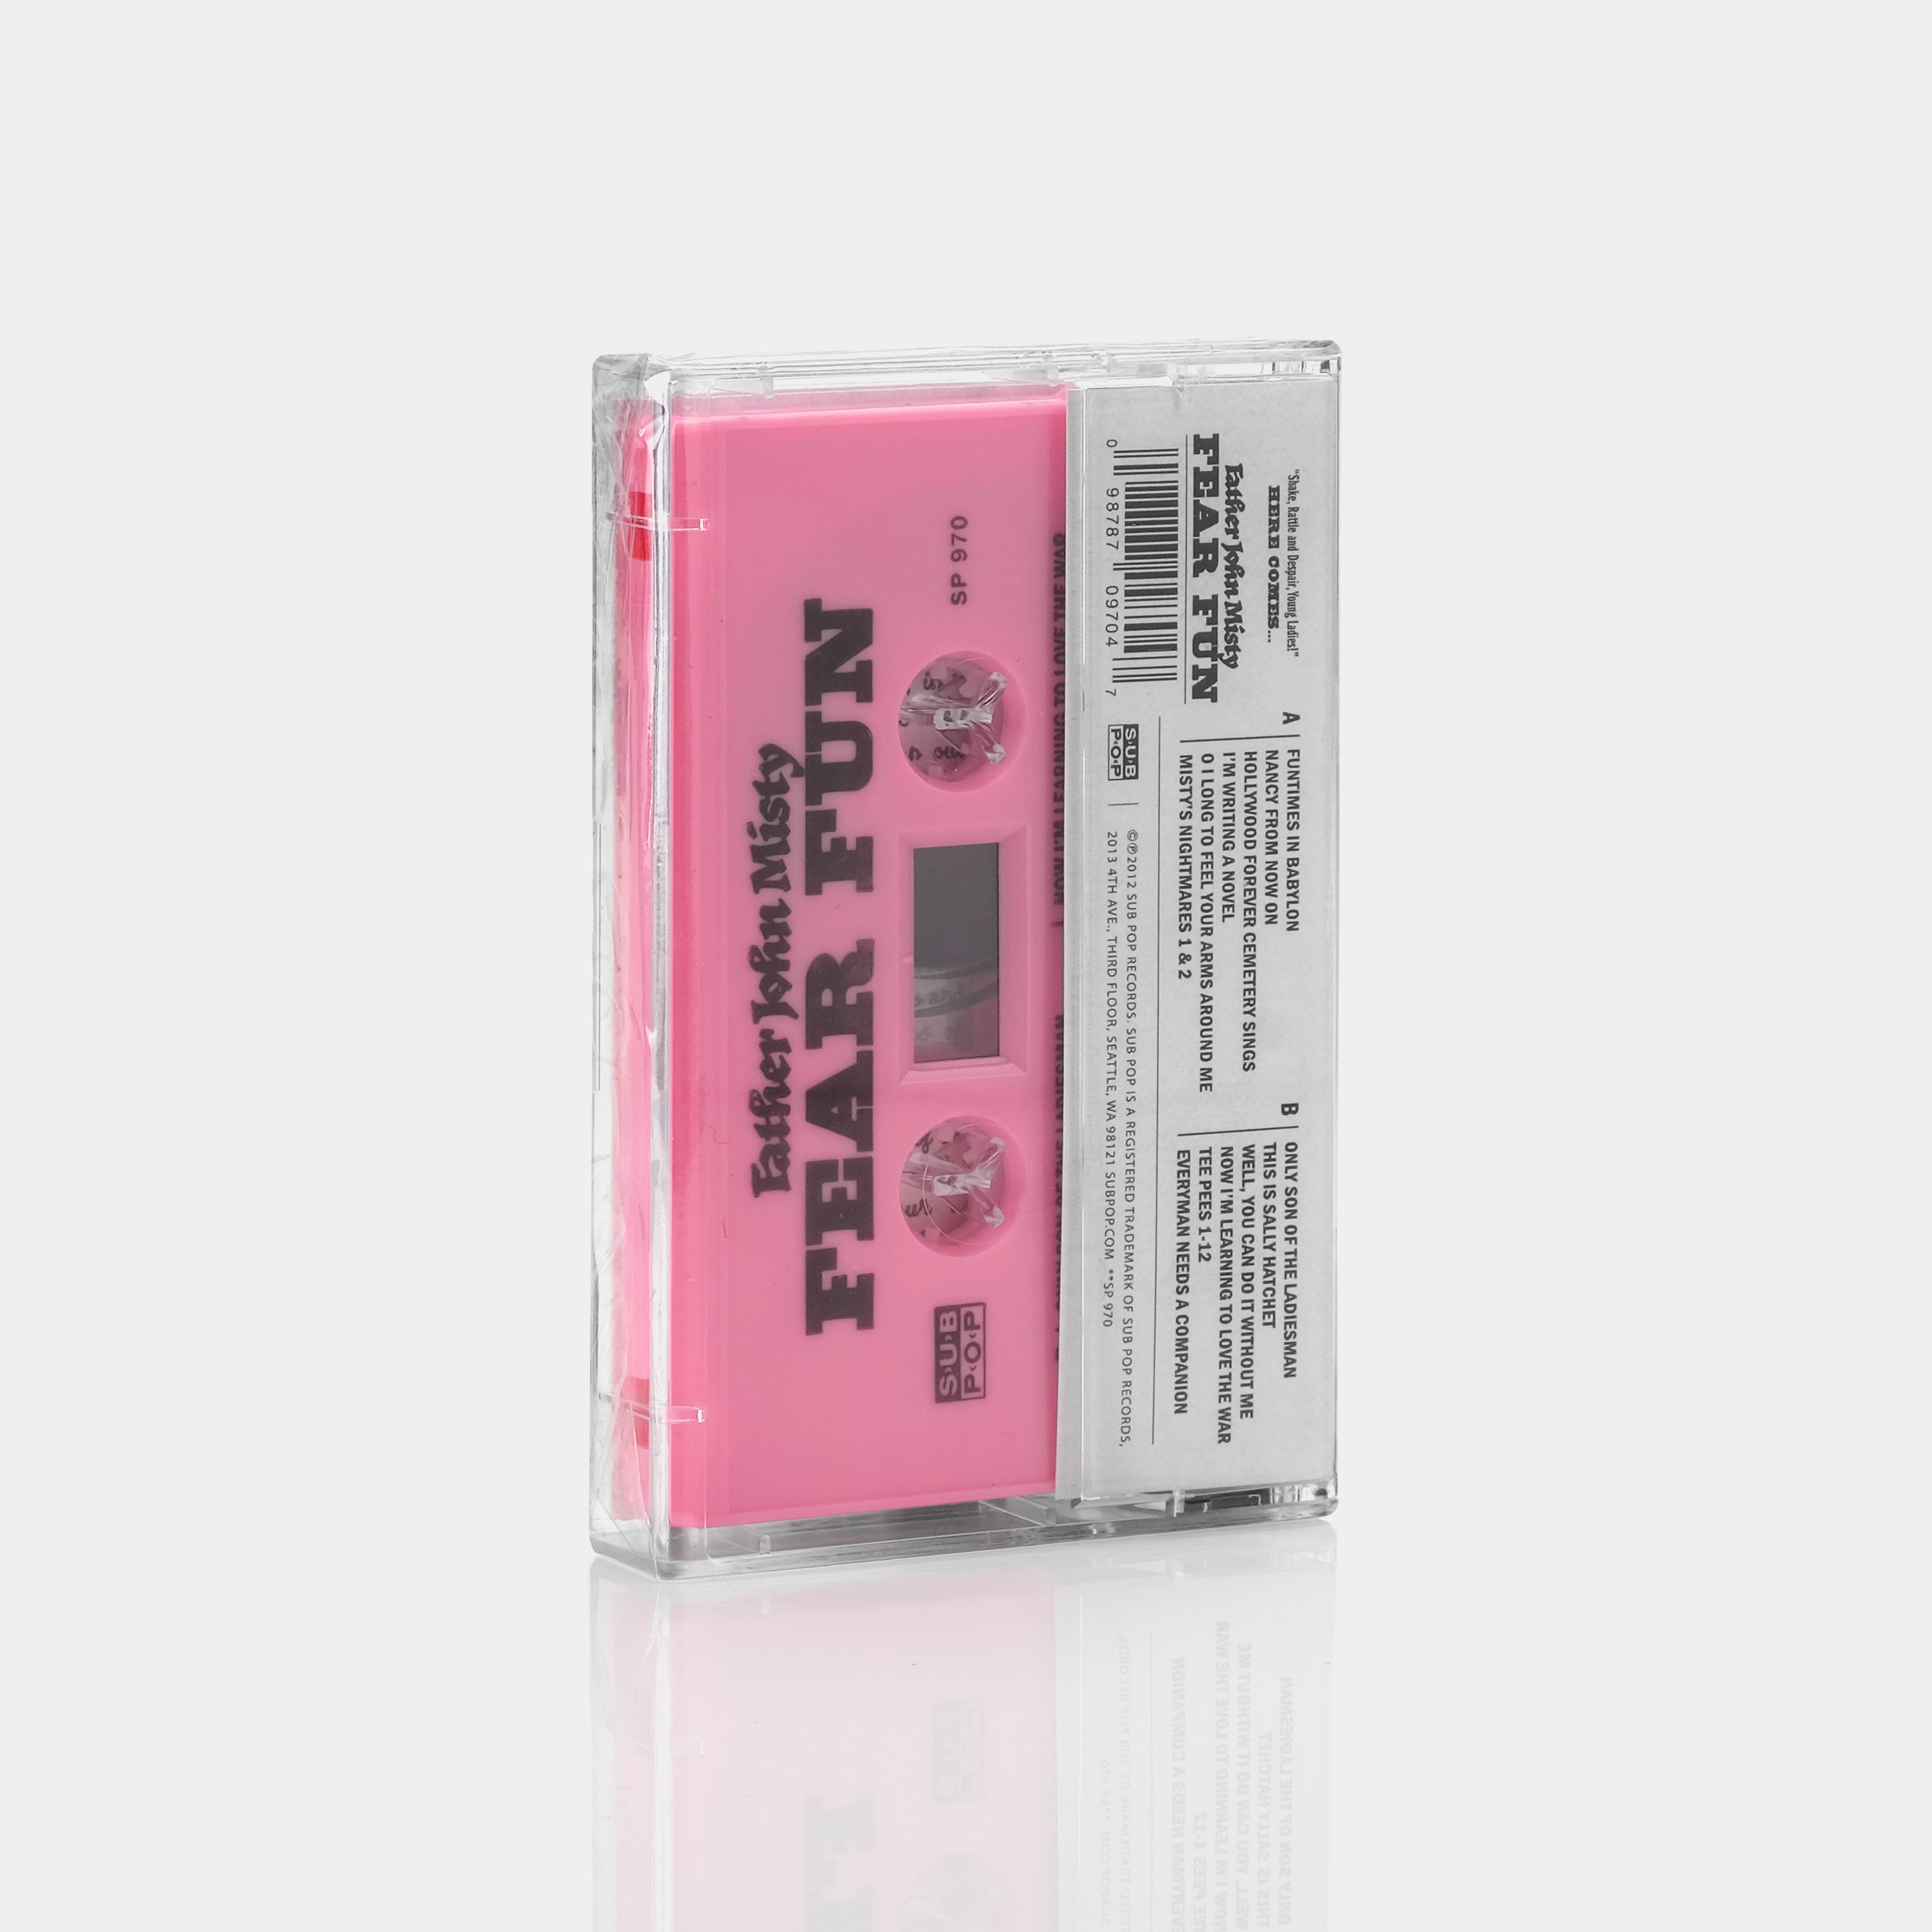 Father John Misty - Fear Fun Pink Cassette Tape